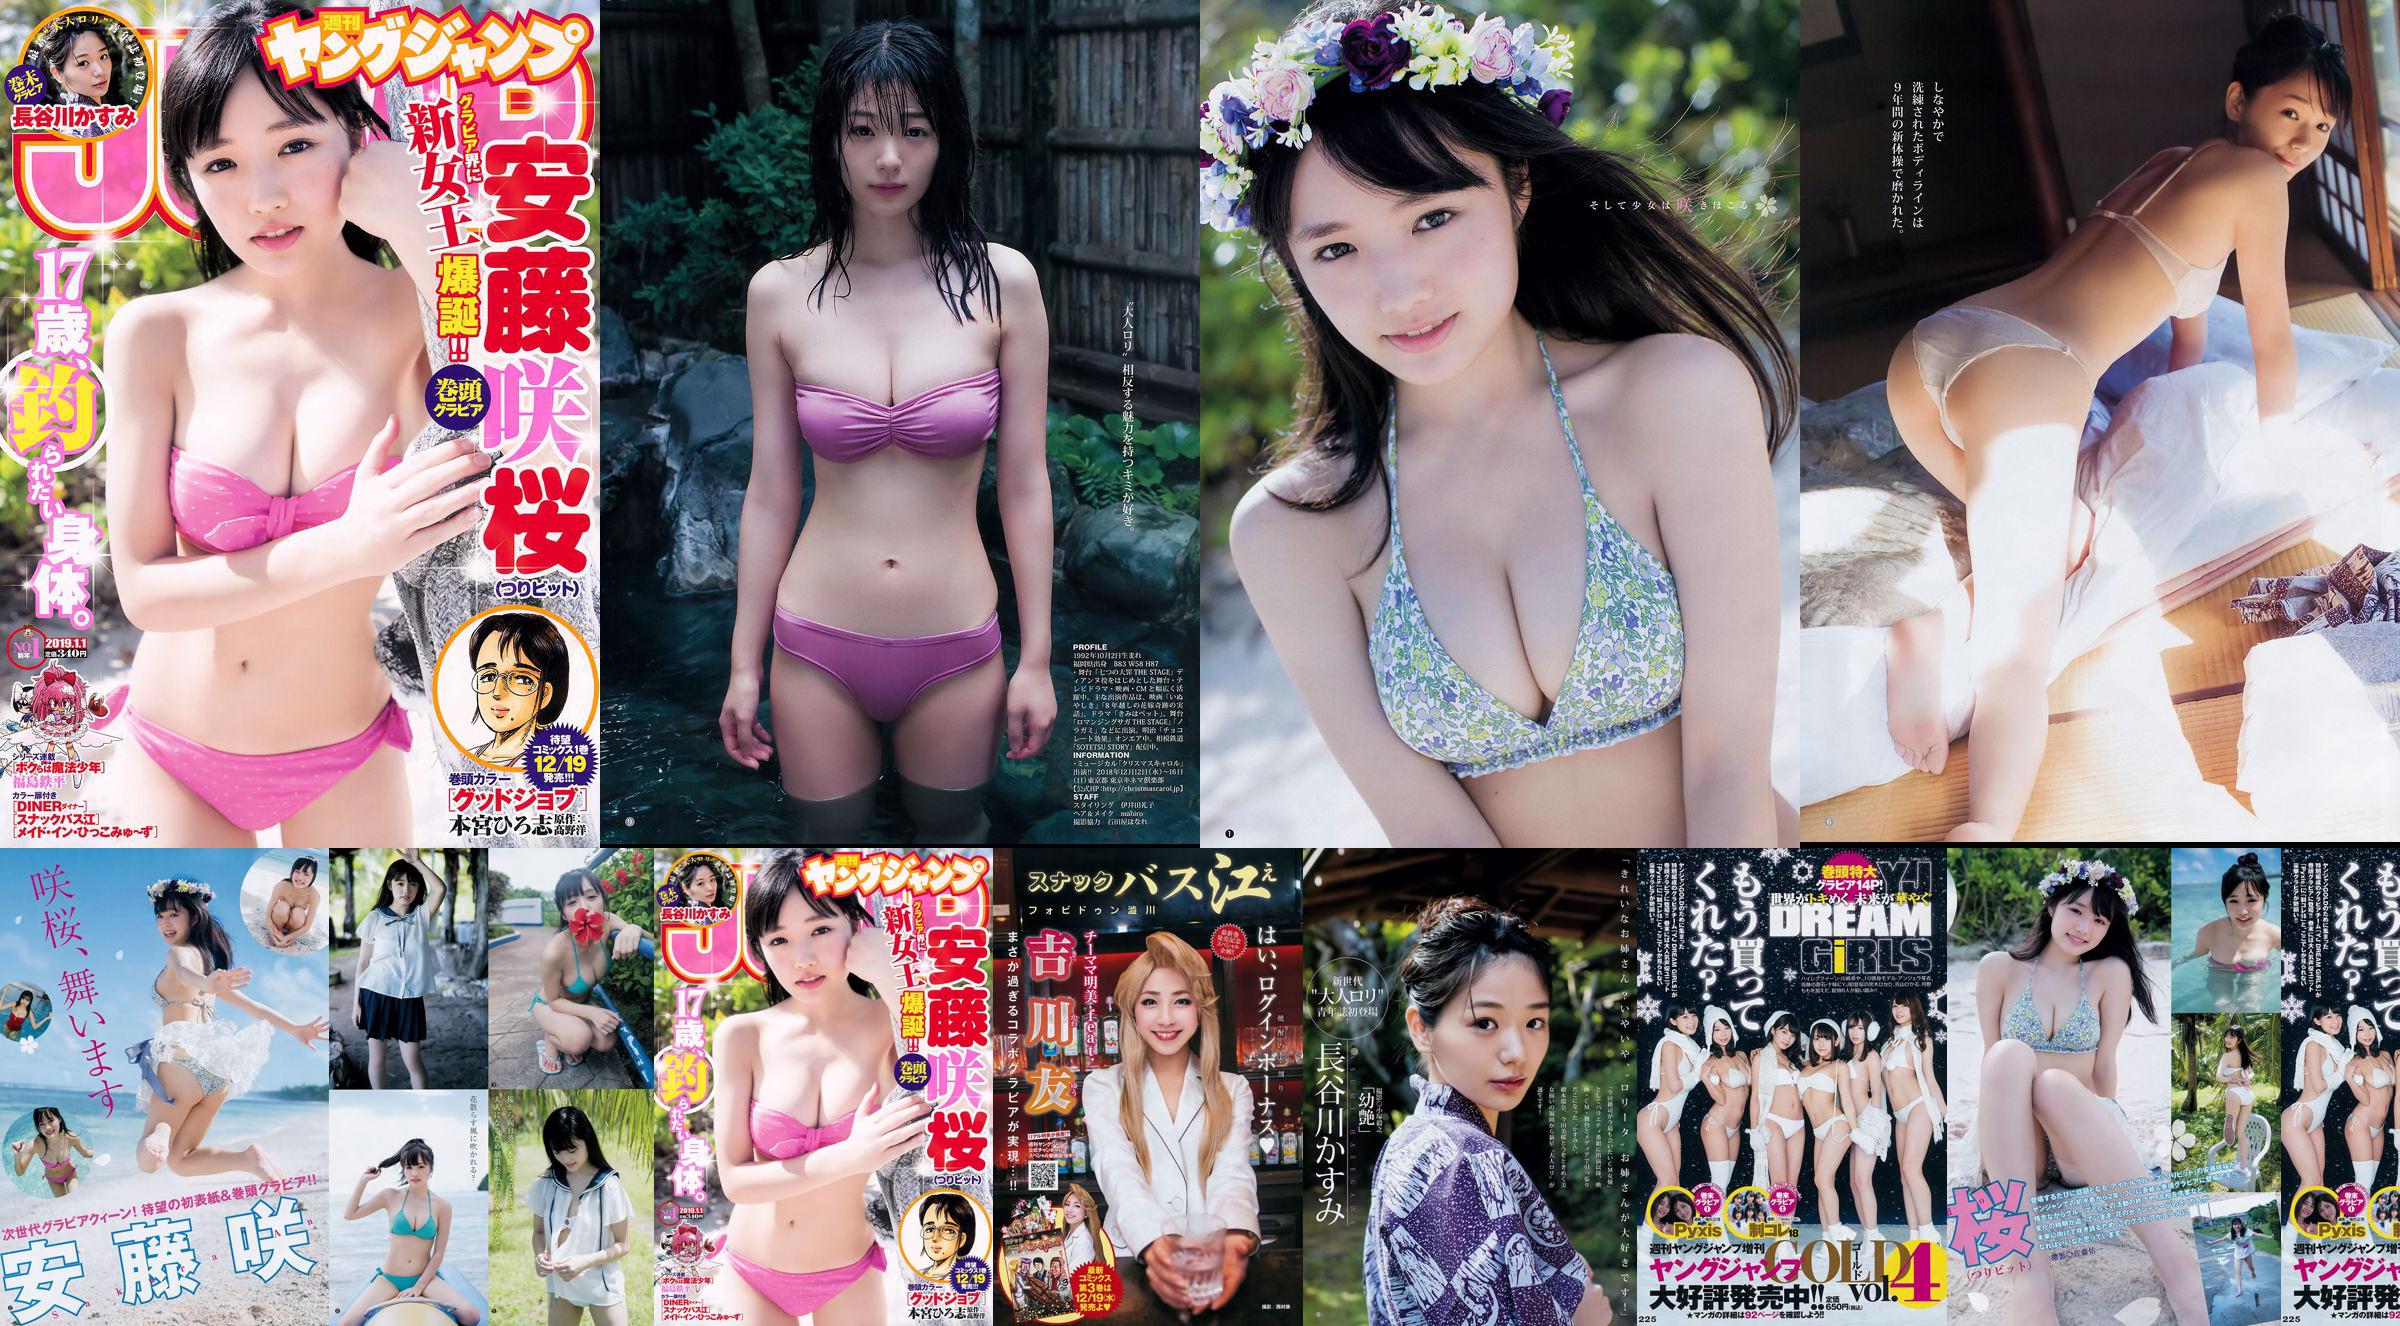 Sakura Ando Kasumi Hasegawa [Weekly Young Jump] Tạp chí ảnh số 01 năm 2019 No.183a83 Trang 1